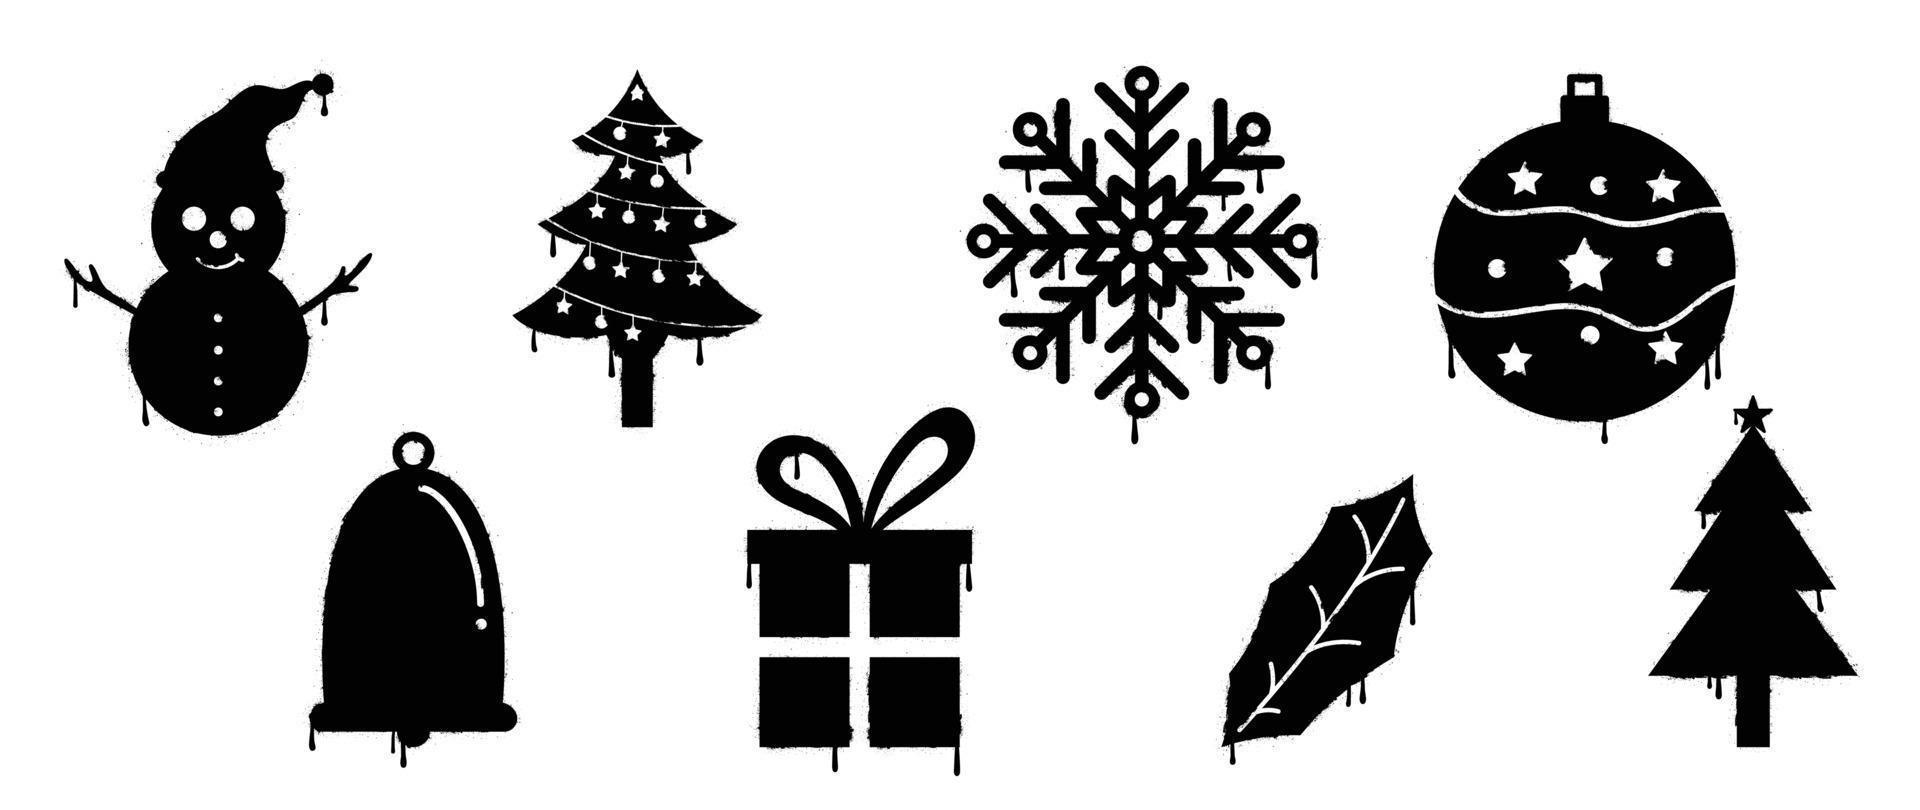 uppsättning av svart jul element spray måla vektor. graffiti, grunge, silhuett element av snögubbe, snöflinga, struntsak, träd på vit bakgrund. design illustration för dekoration, kort, klistermärke. vektor